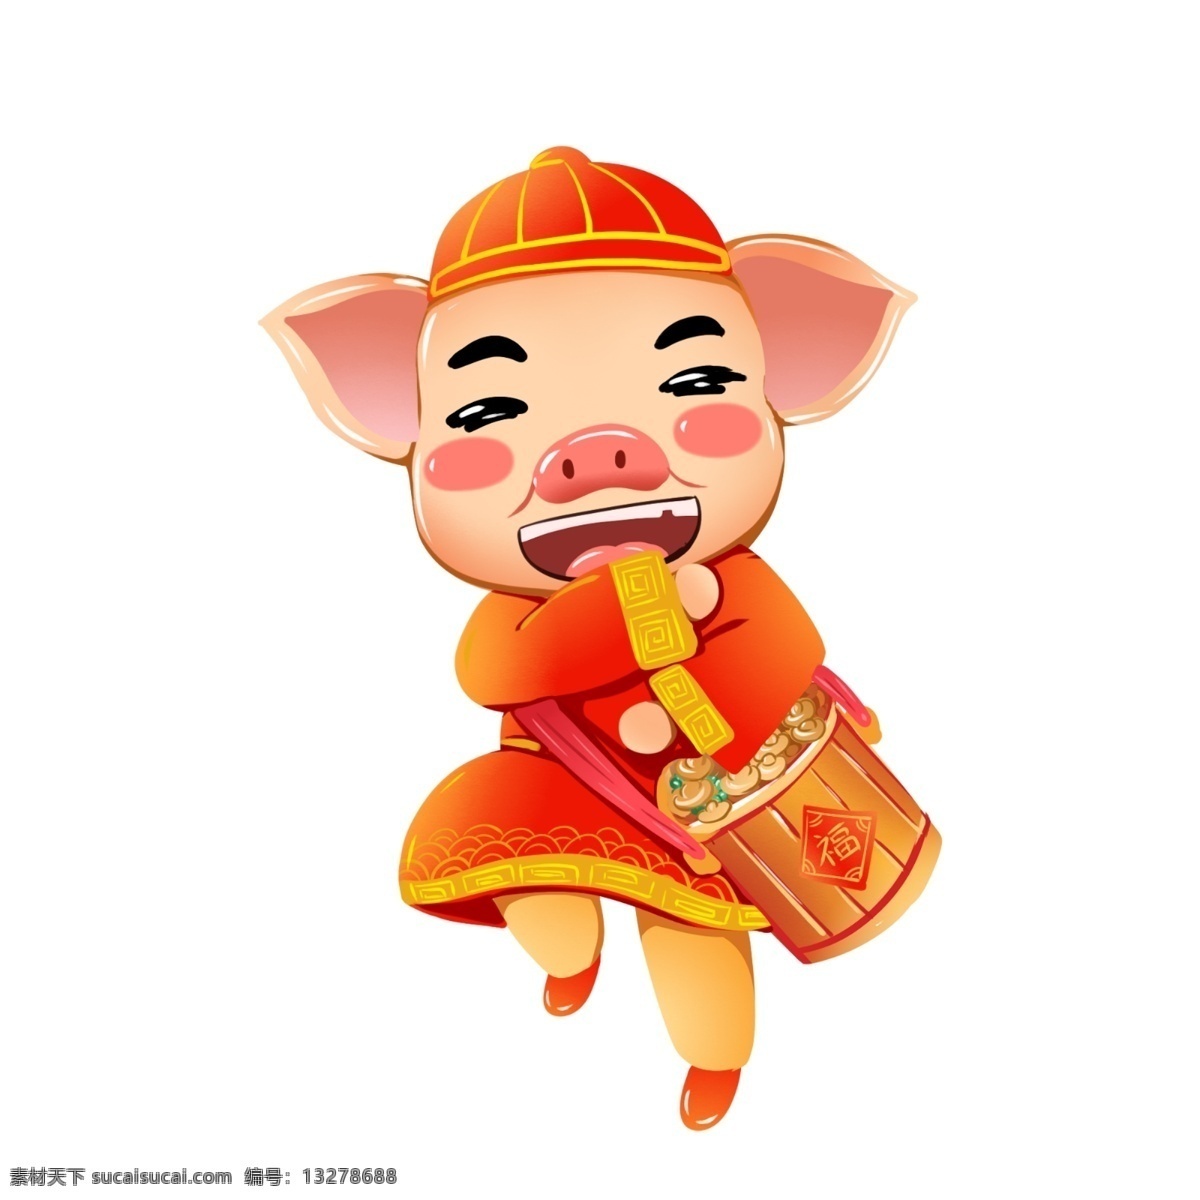 2019 春节 猪年 聚宝盆 生肖 猪 可爱 喜庆 商用 原创 手绘 插画 ip 形象 元素 拜大年